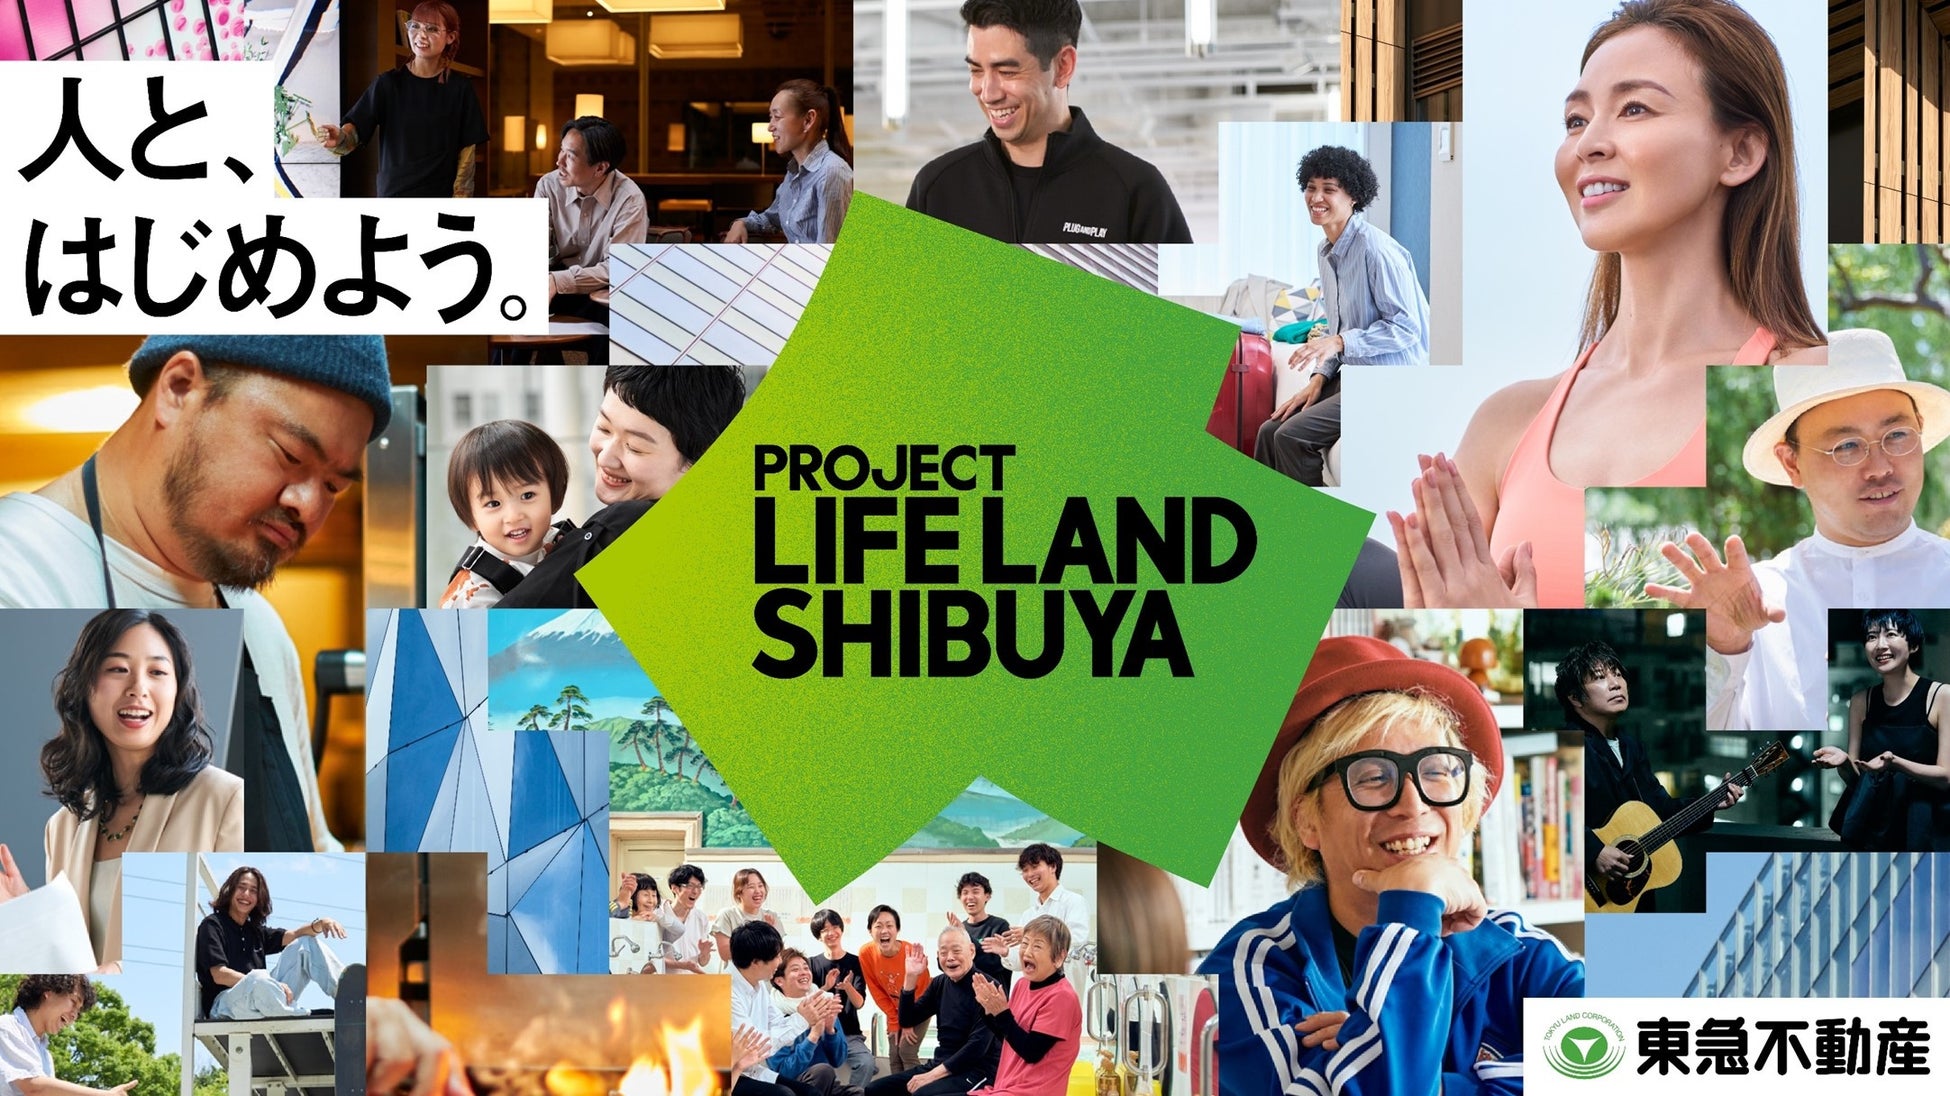 広域渋谷圏で「創造」「発信」「集積」を循環させる新たな取り組み 「人と、はじめよう。」をコンセプトにした「PROJECT LIFE LAND SHIBUYA」をスタートのサブ画像1_「PROJECT LIFE LAND SHIBUYA」のキービジュアル